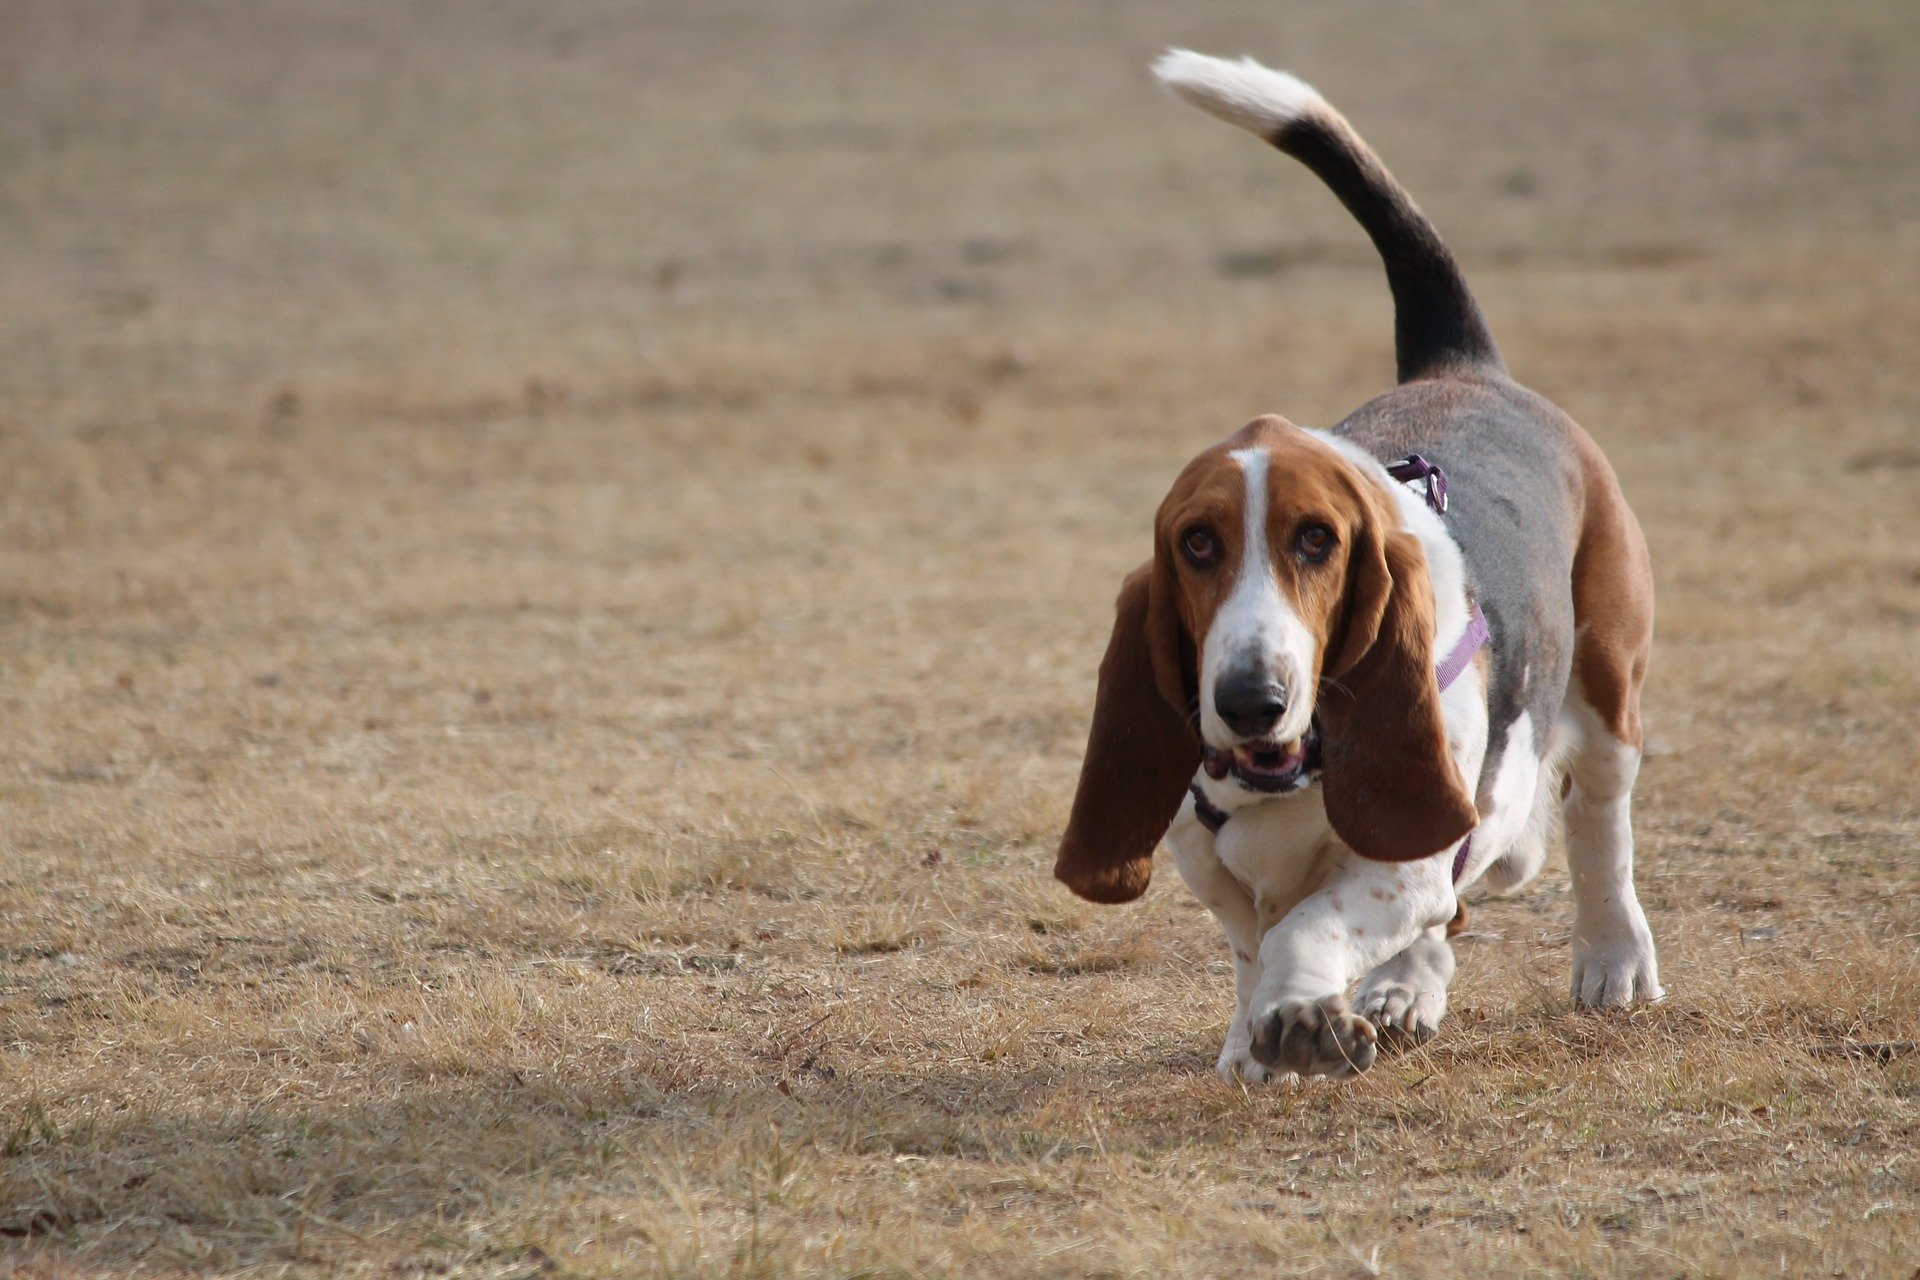 Basset Hound je slavný beagle. Přes své krátké nohy je aktivní a velice loajální. Pes tohoto plemene si zahrál ve známém seriálu Colombo.